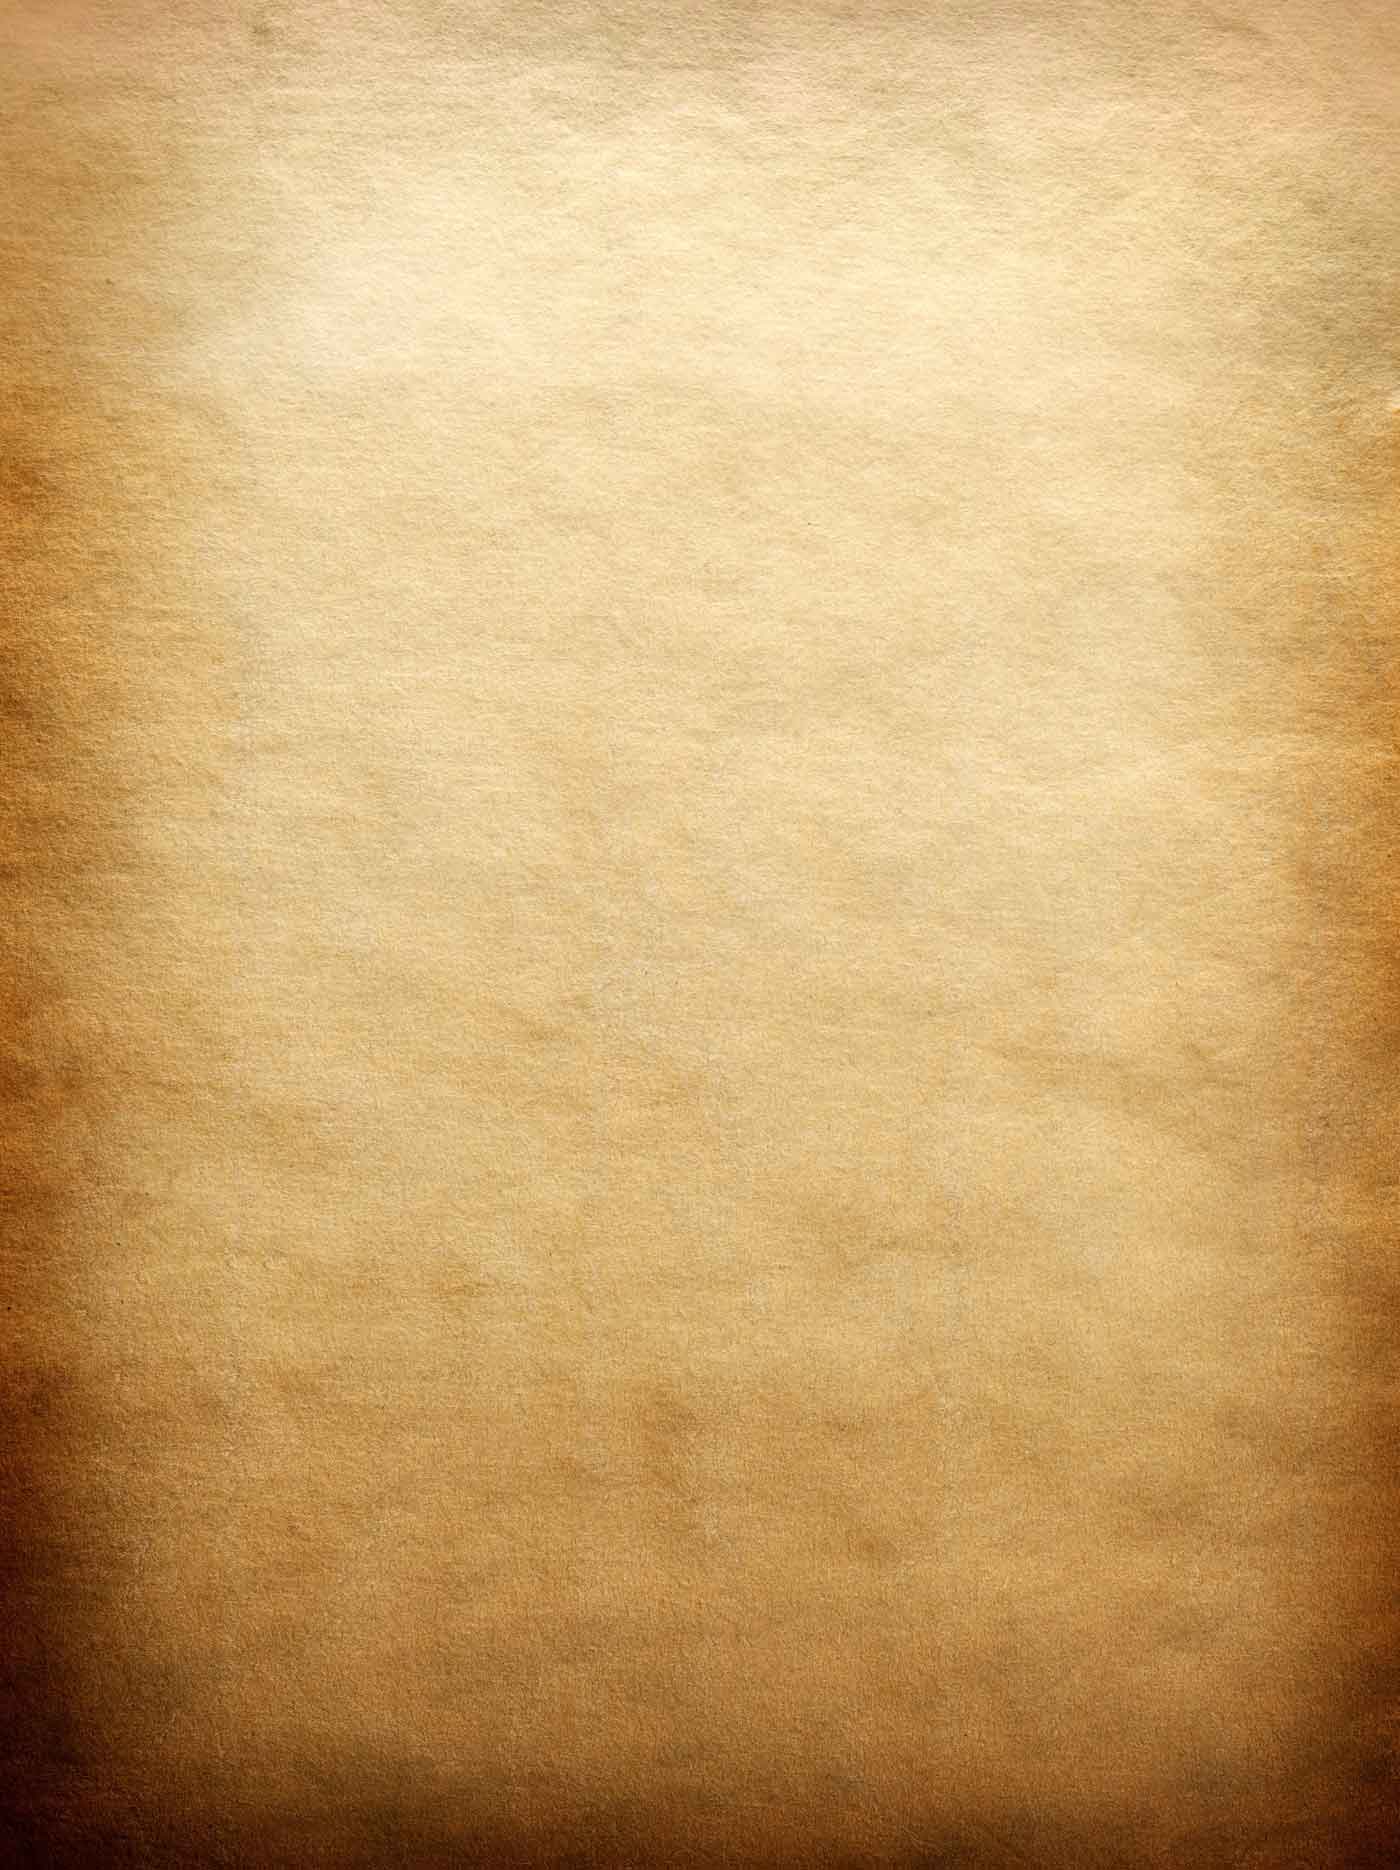 Parchment wallpaper